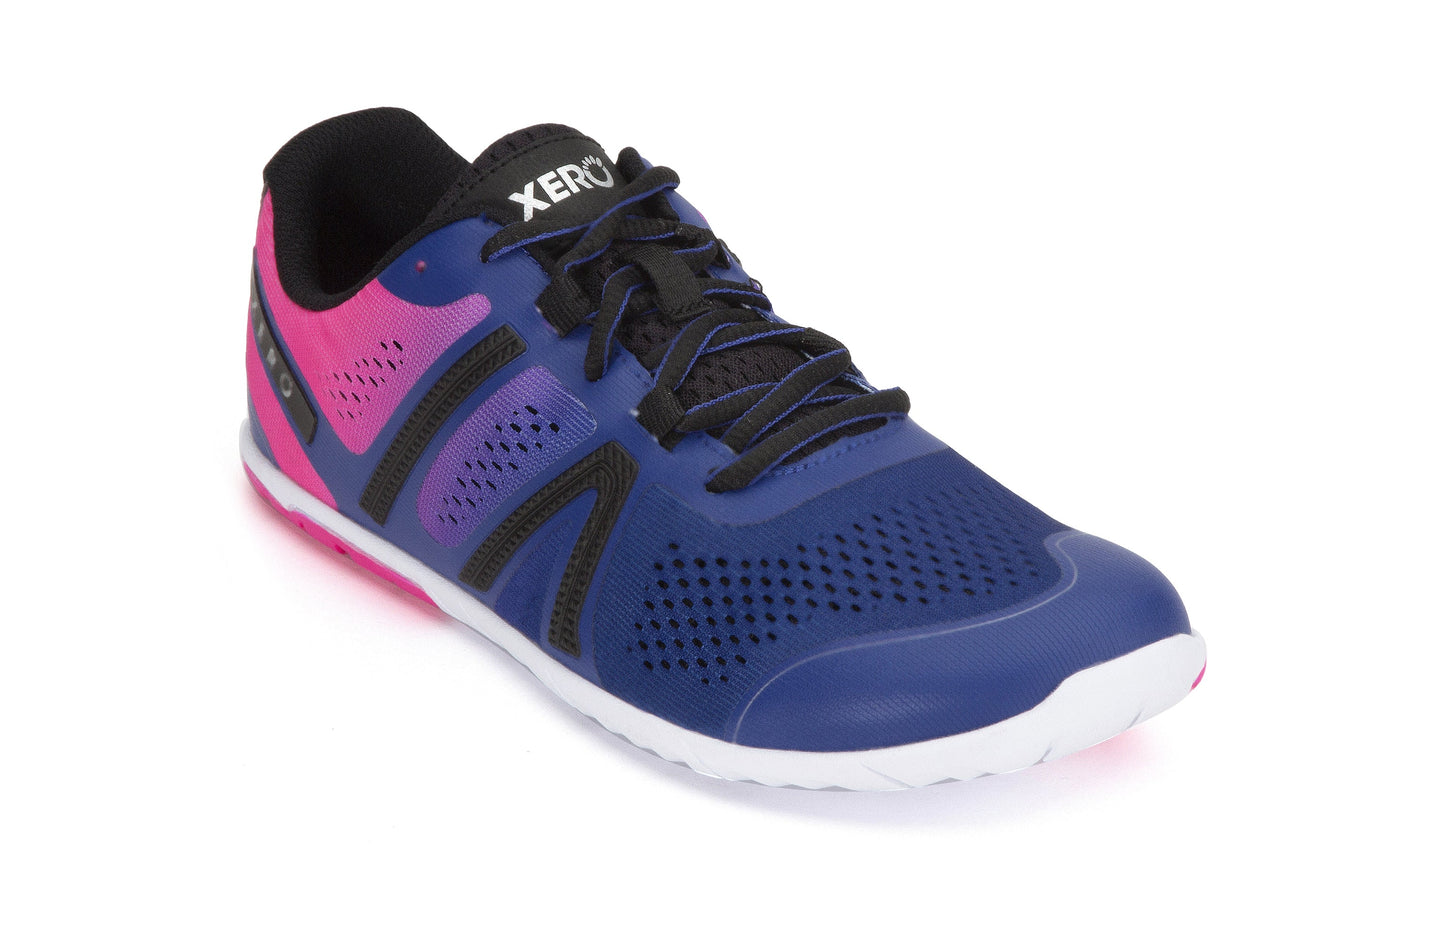 Xero Shoes HFS Womens barfods træningssko til kvinder i farven sodalite blue / pink glow, vinklet